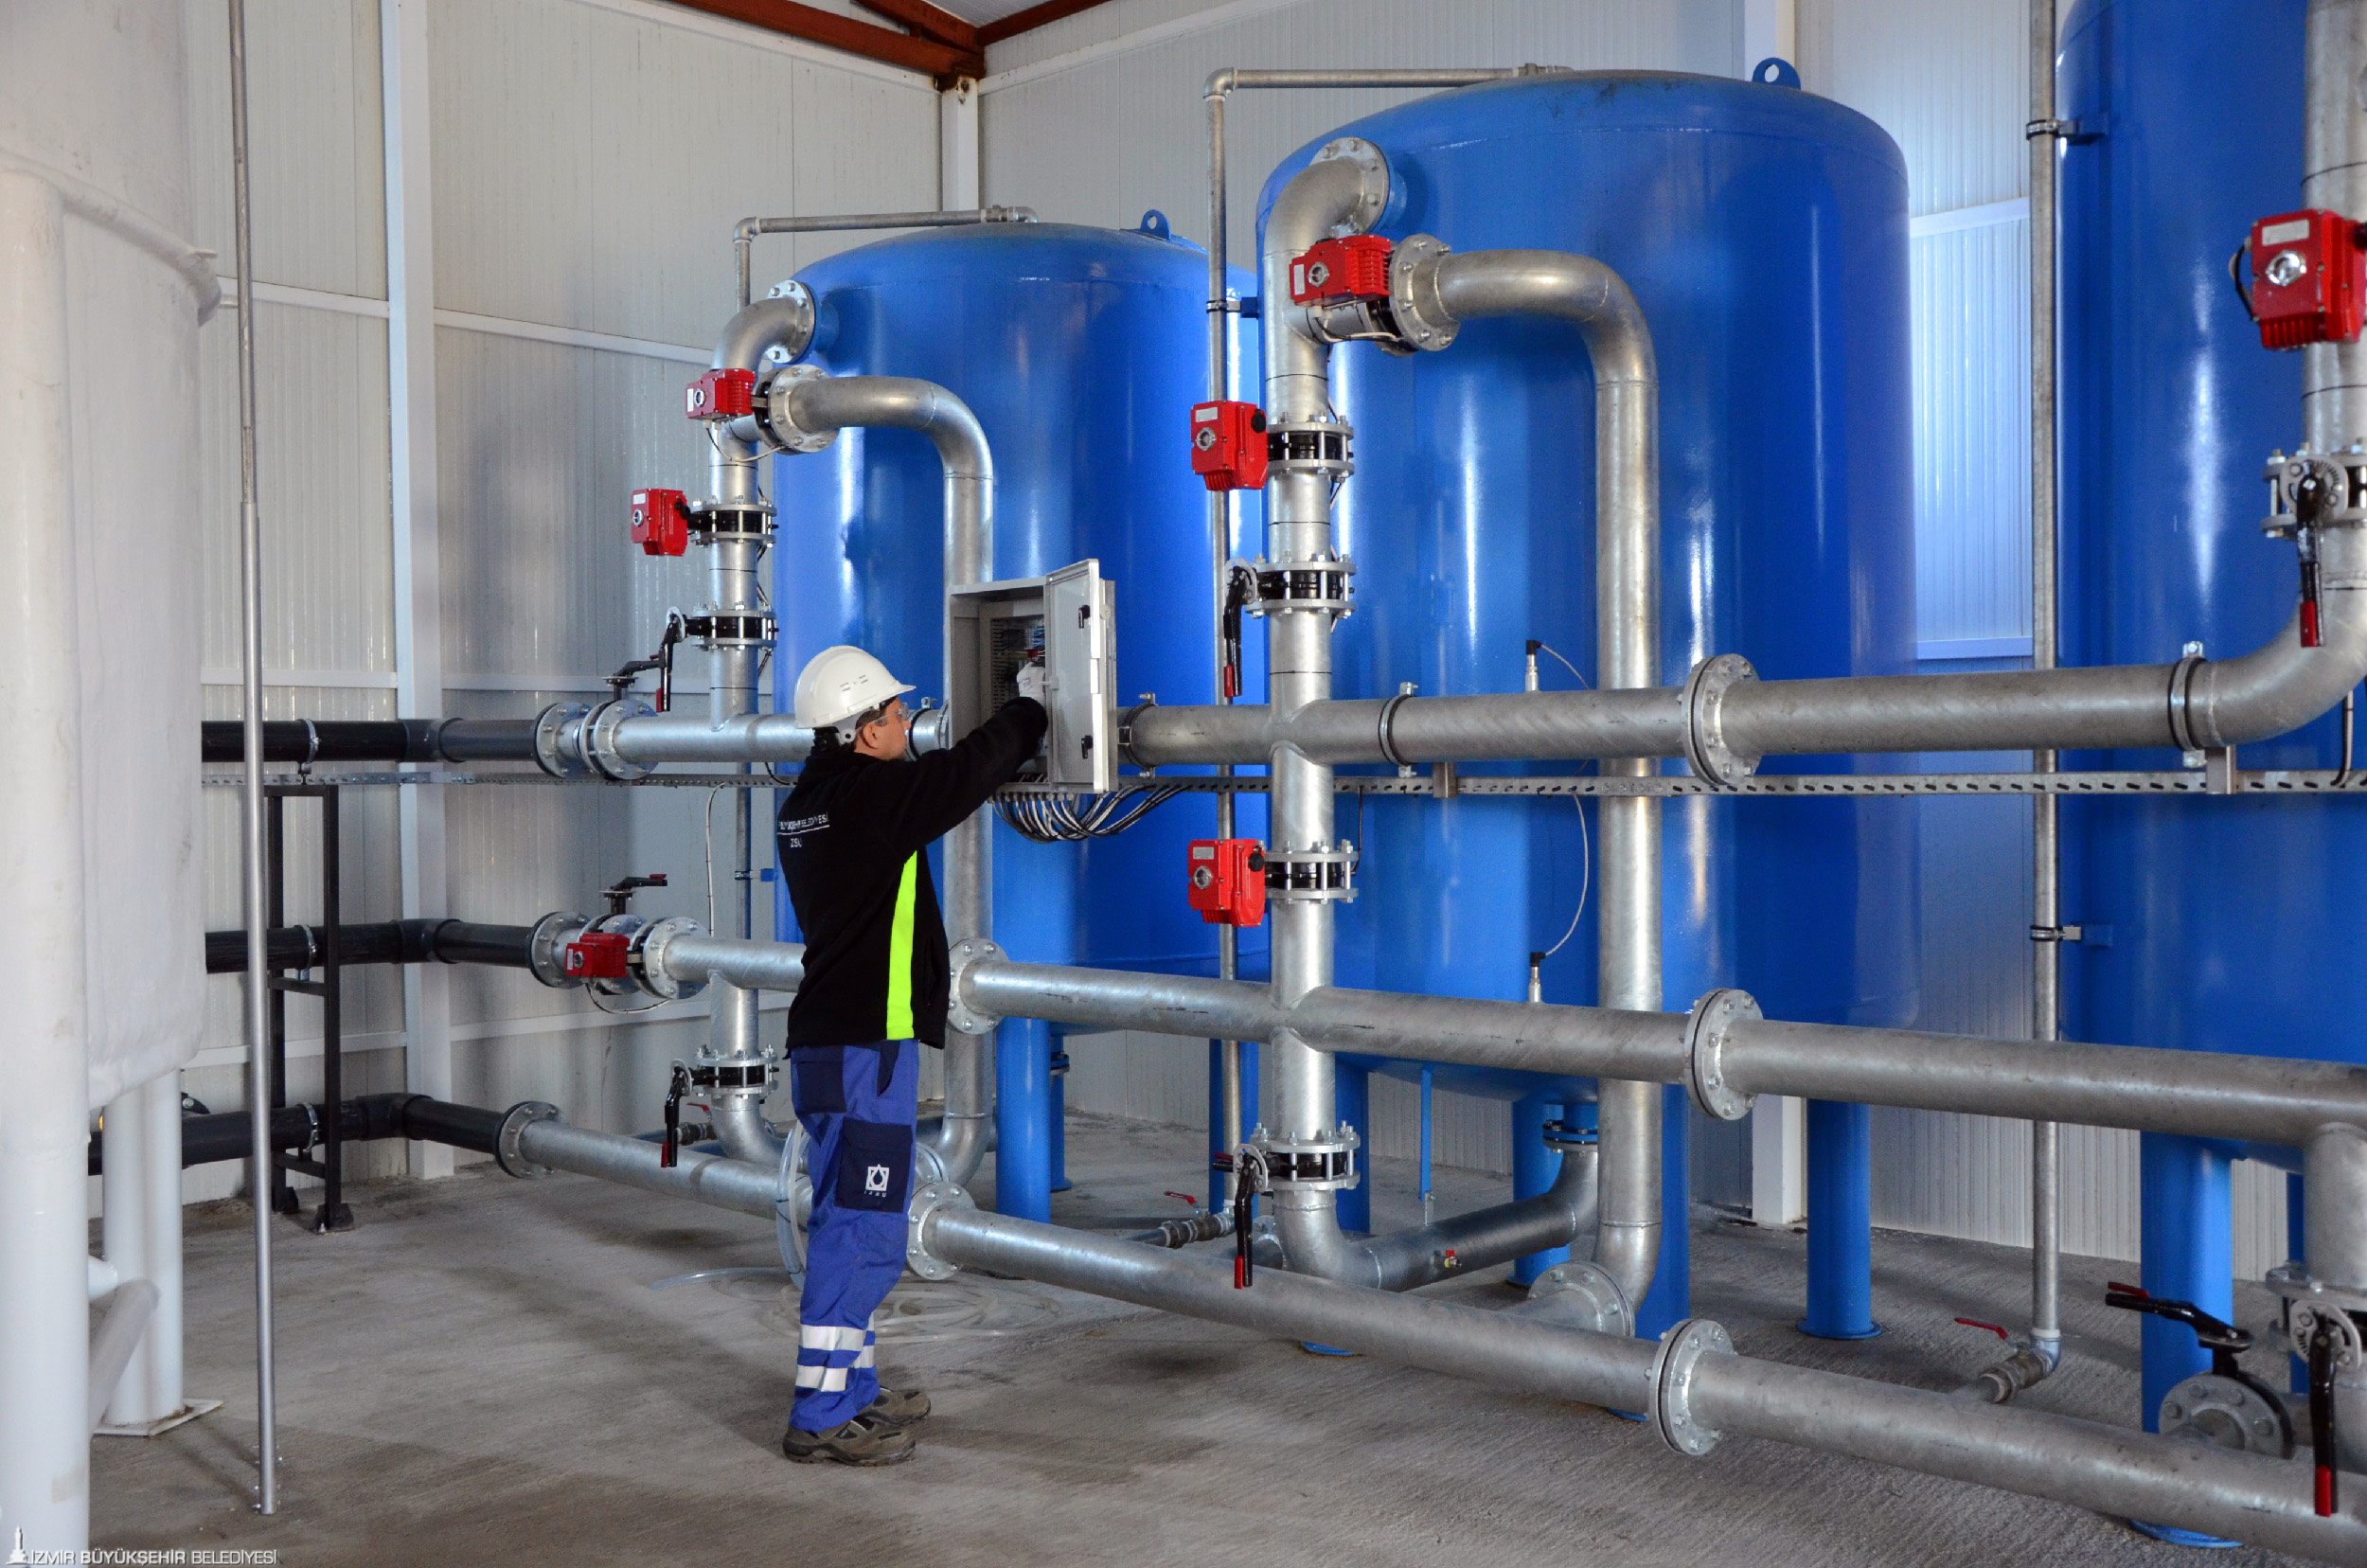 Dikili’de paket içme suyu arıtma tesisi açıldı